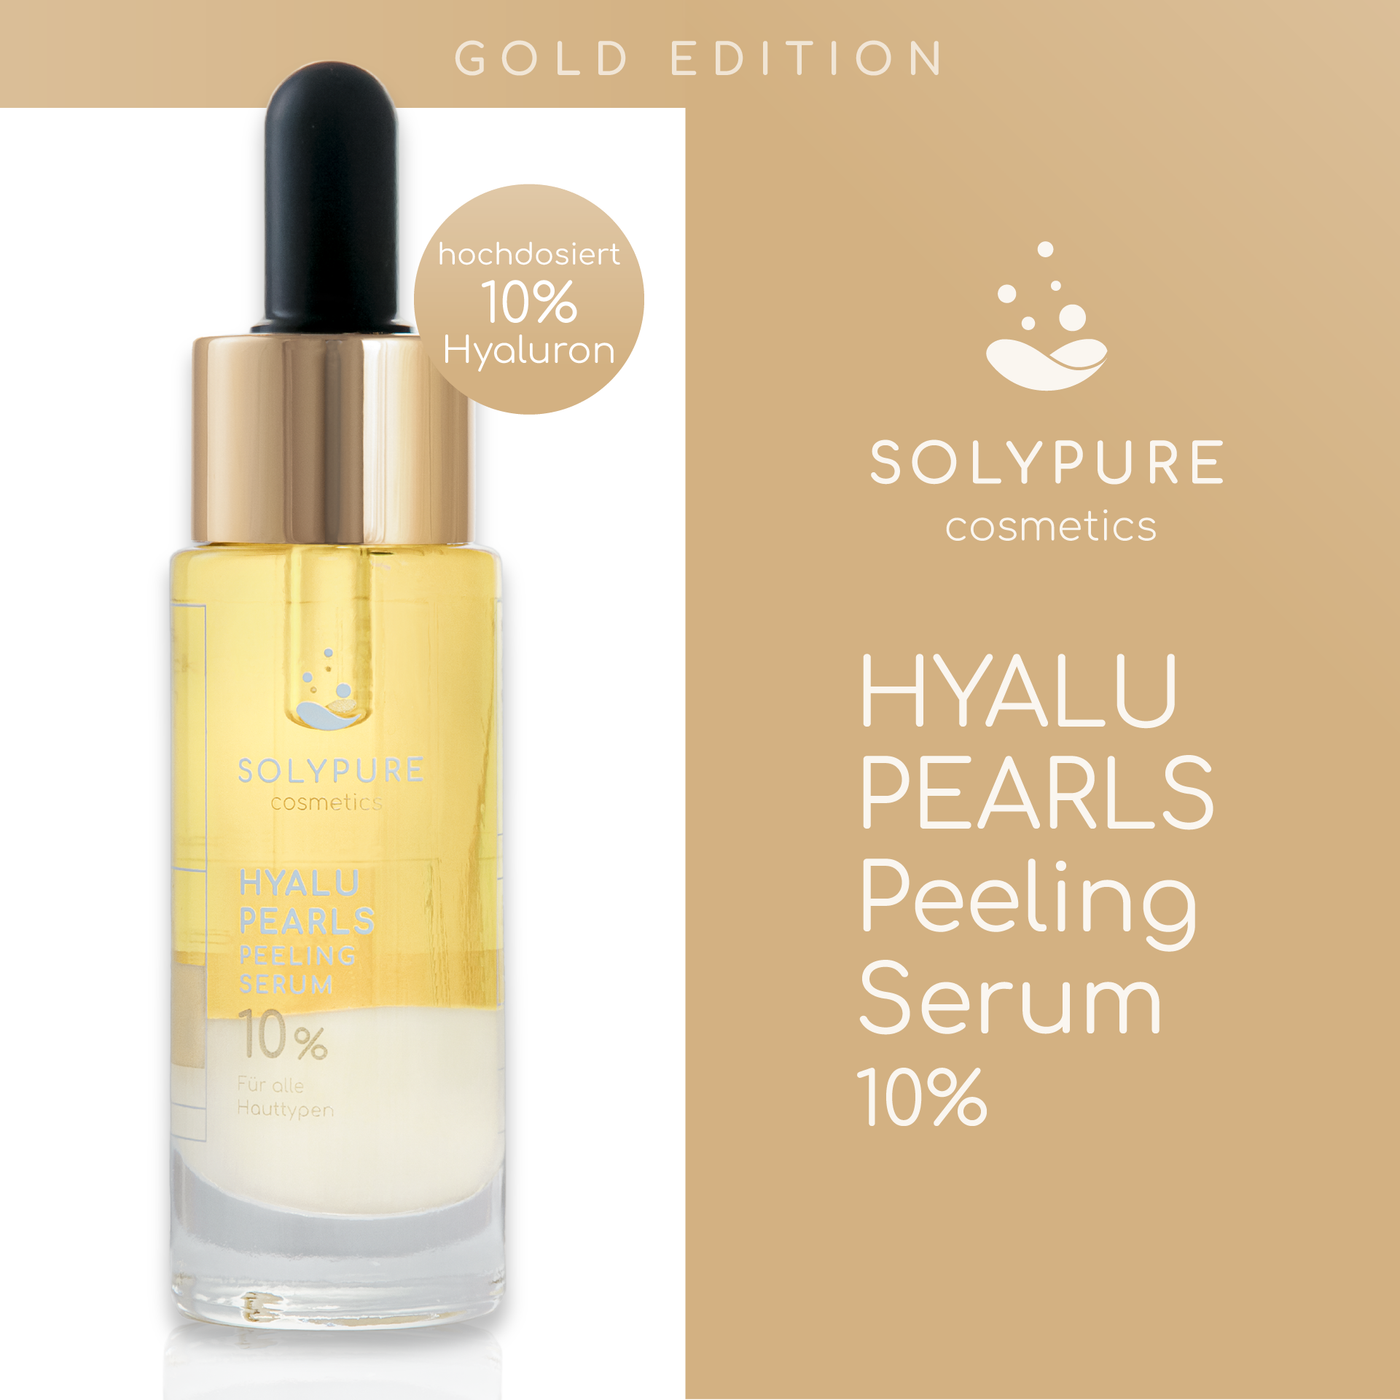 HYALU-PEARLS Peeling Serum 10%